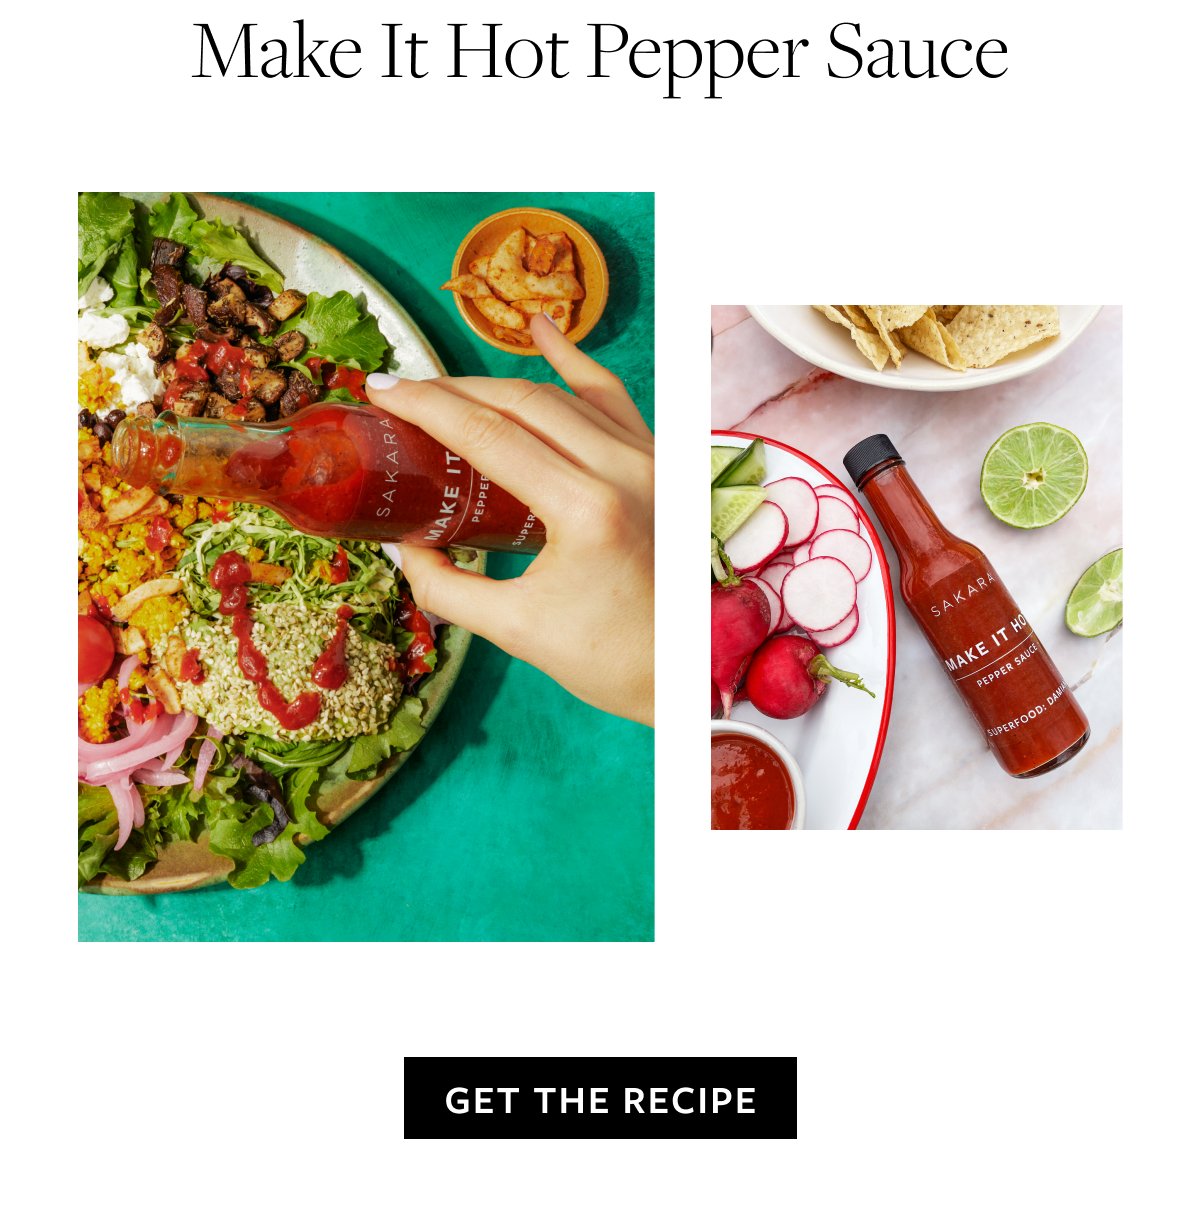 Make It Hot Pepper Sauce